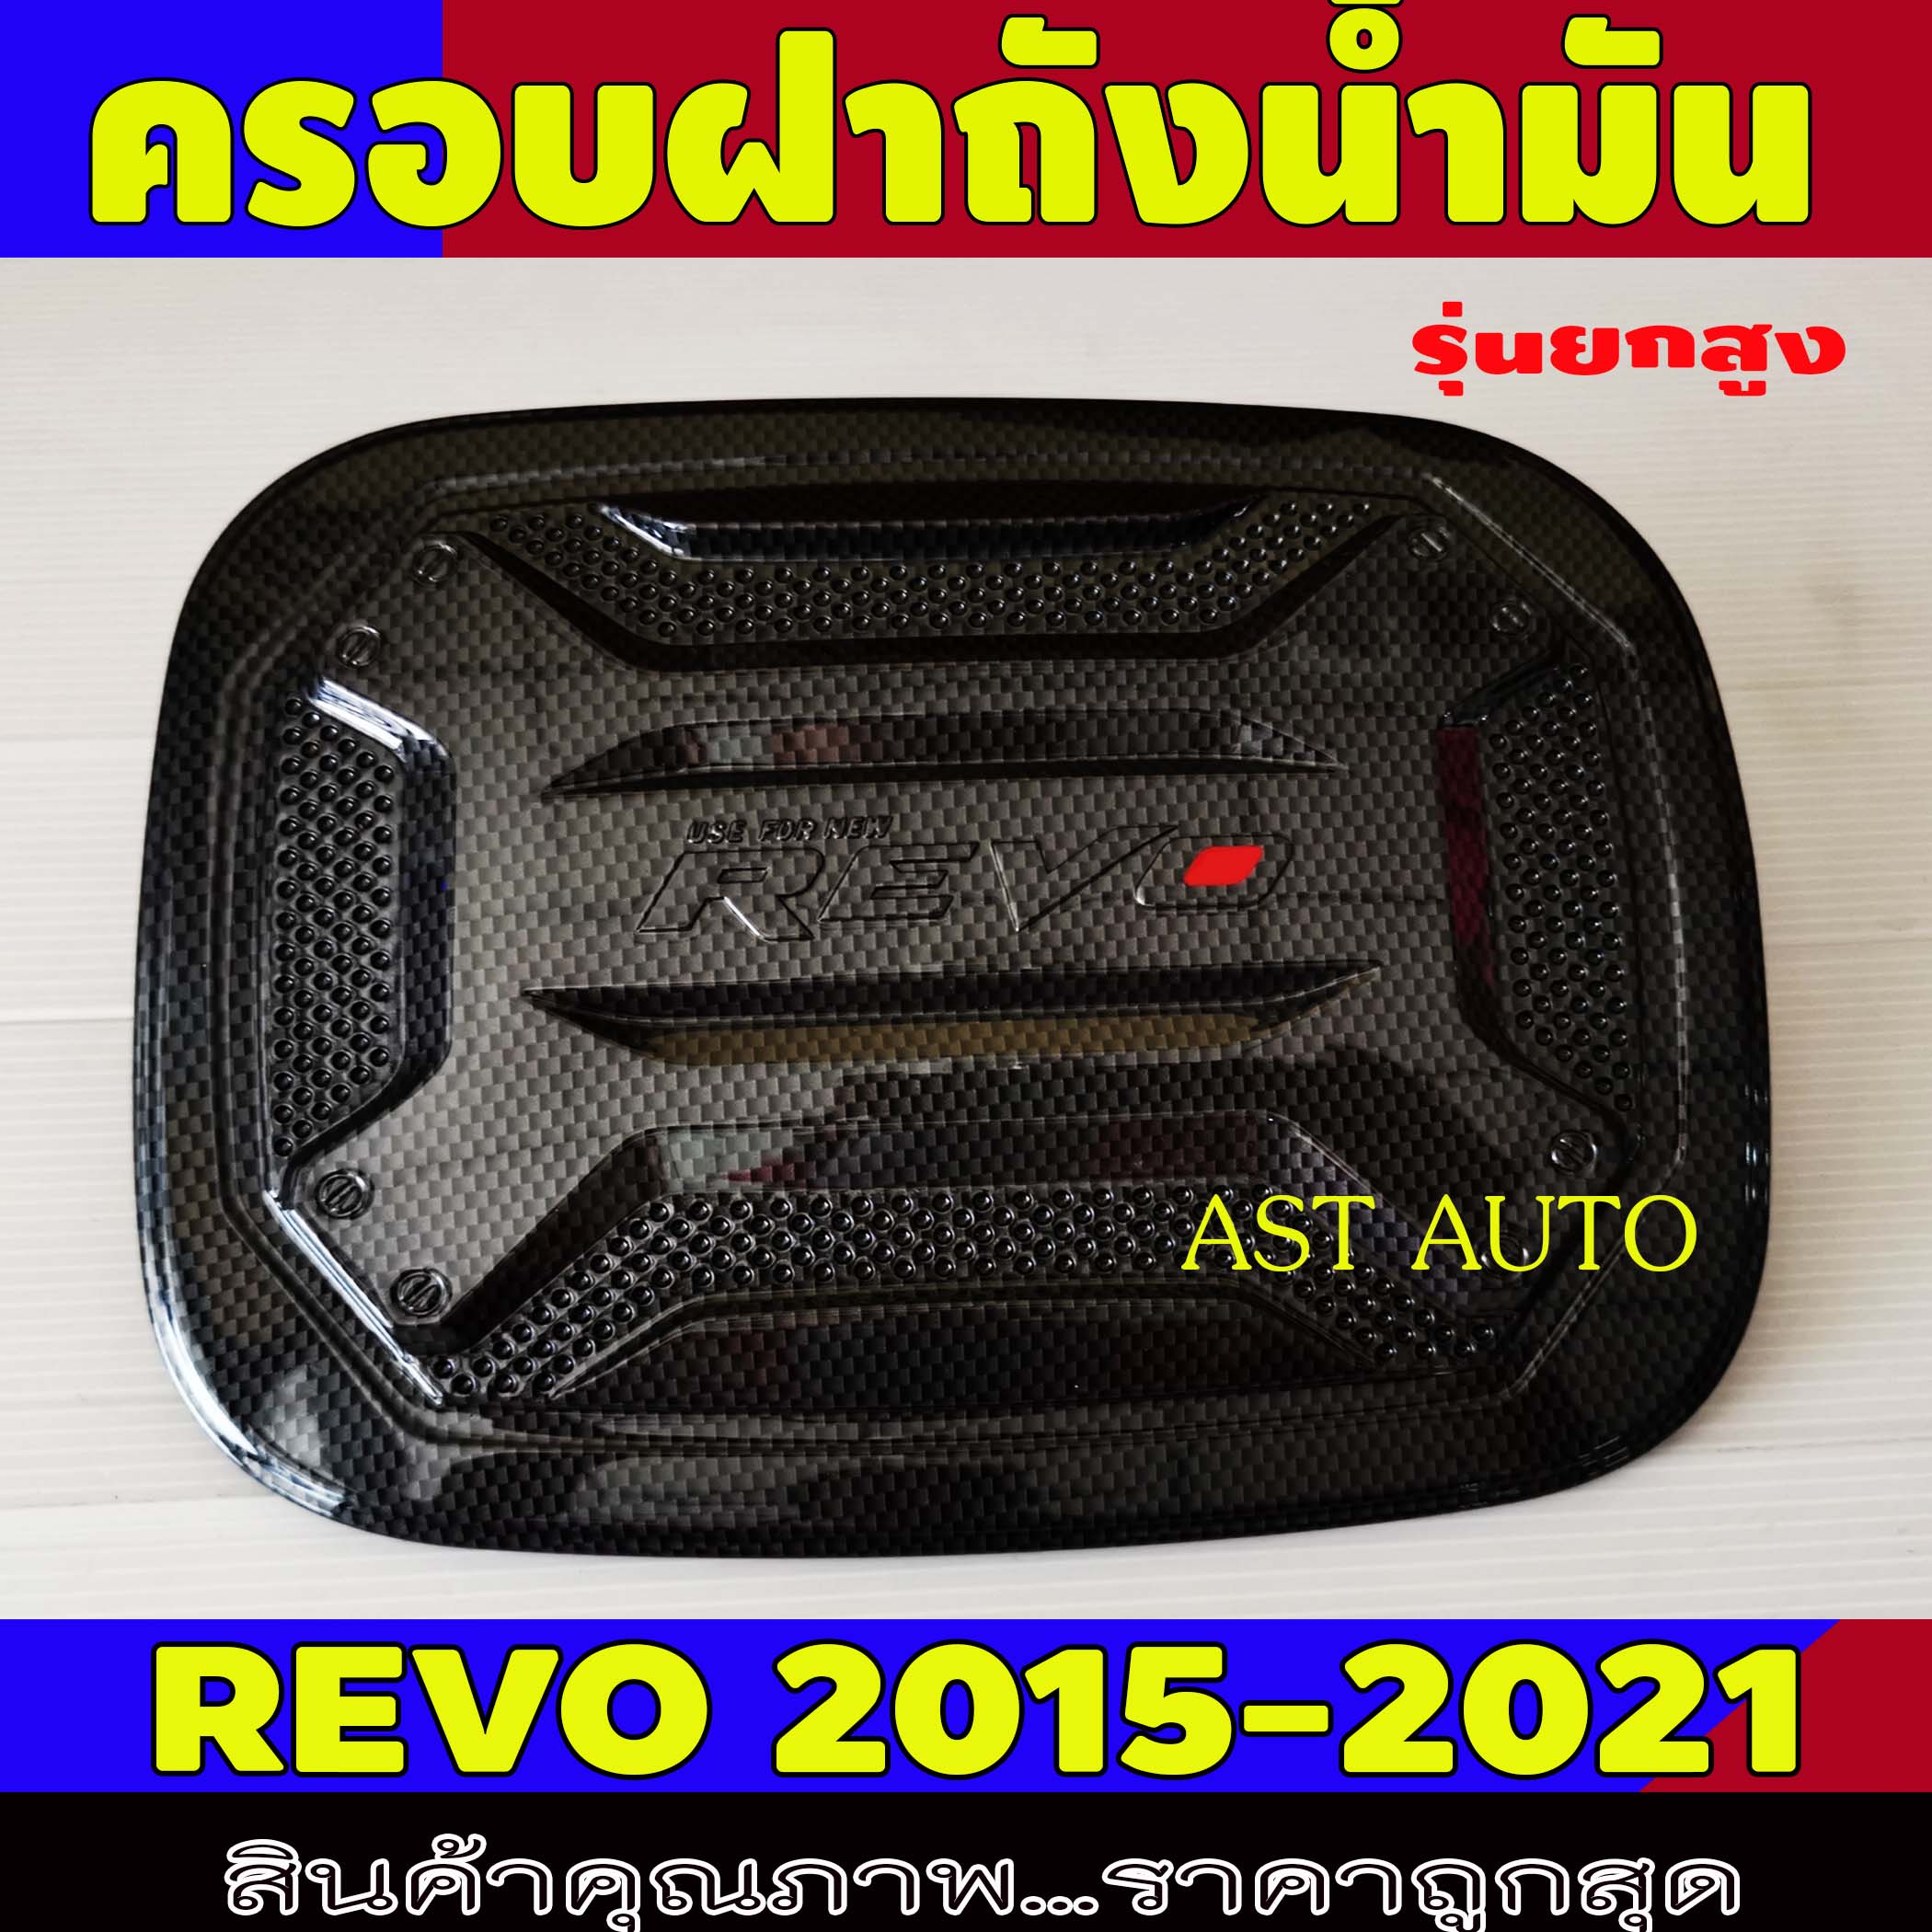 ครอบฝาถังน้ำมัน ครอบฝาถังรถยนต์ ลายคาร์บอน-โอแดง รุ่นยกสูง โตโยต้า โรโว Toyota Revo 2015 - 2021 R